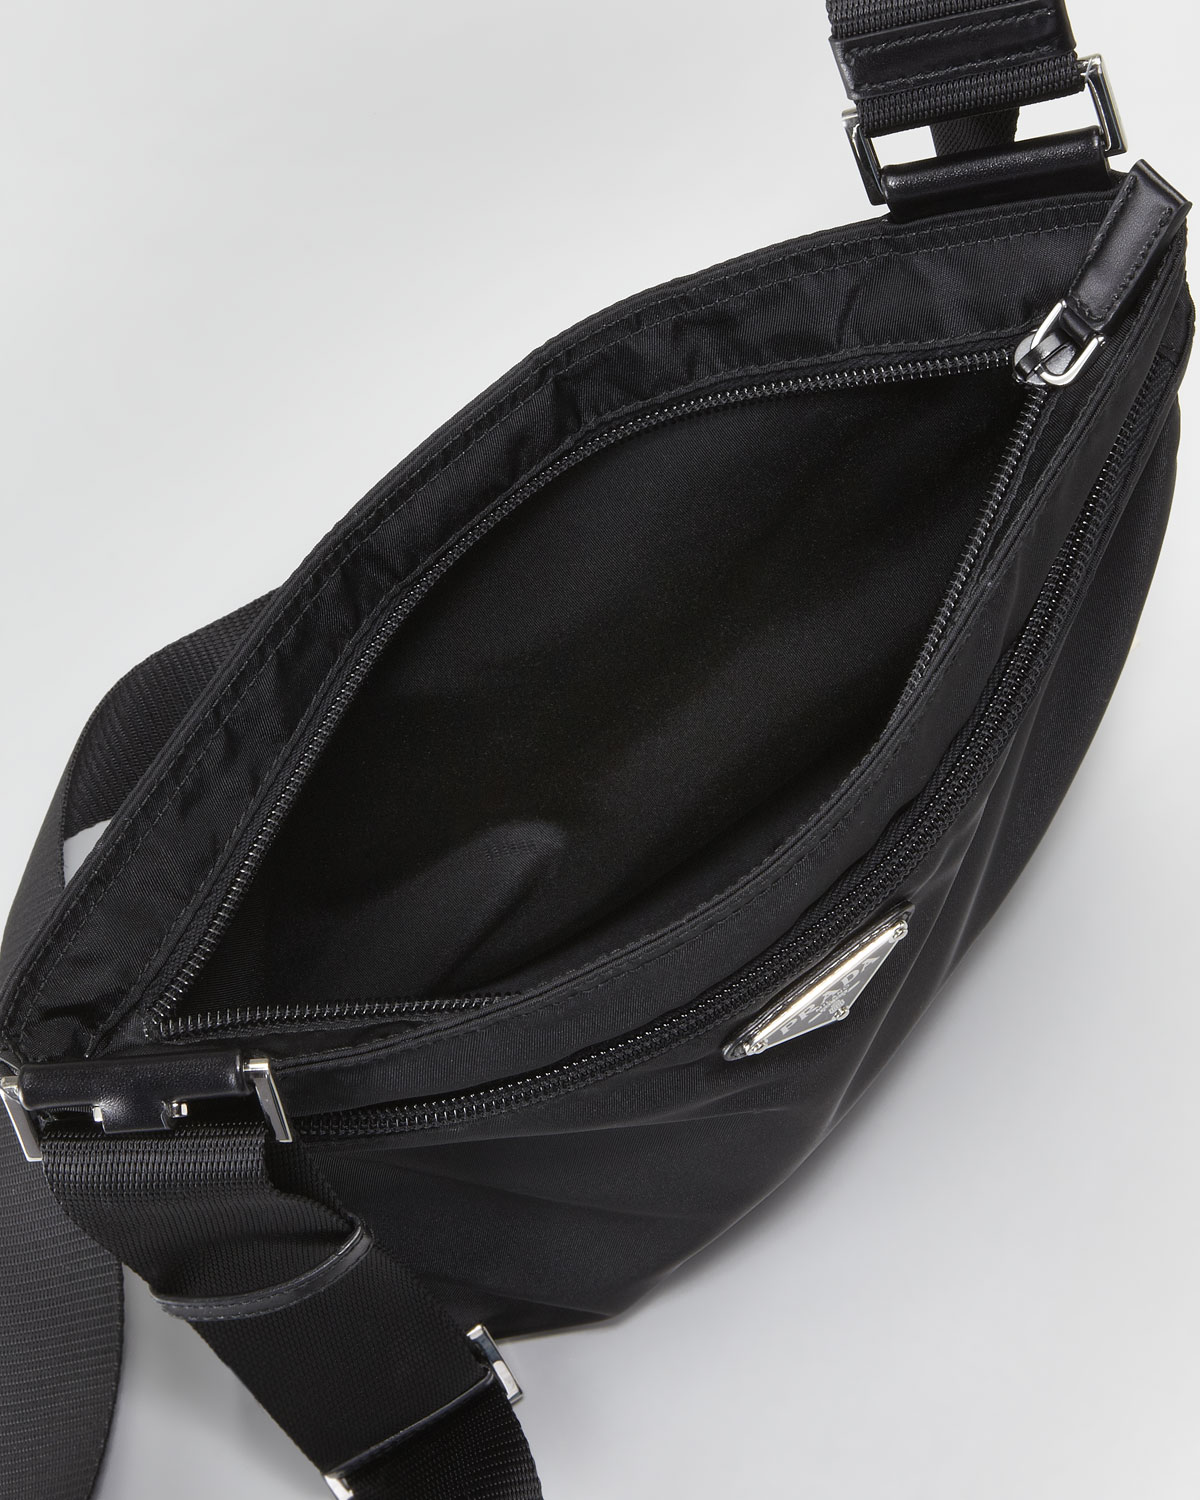 Prada Vela Large Crossbody Messenger Bag Nero in Black for Men - Lyst